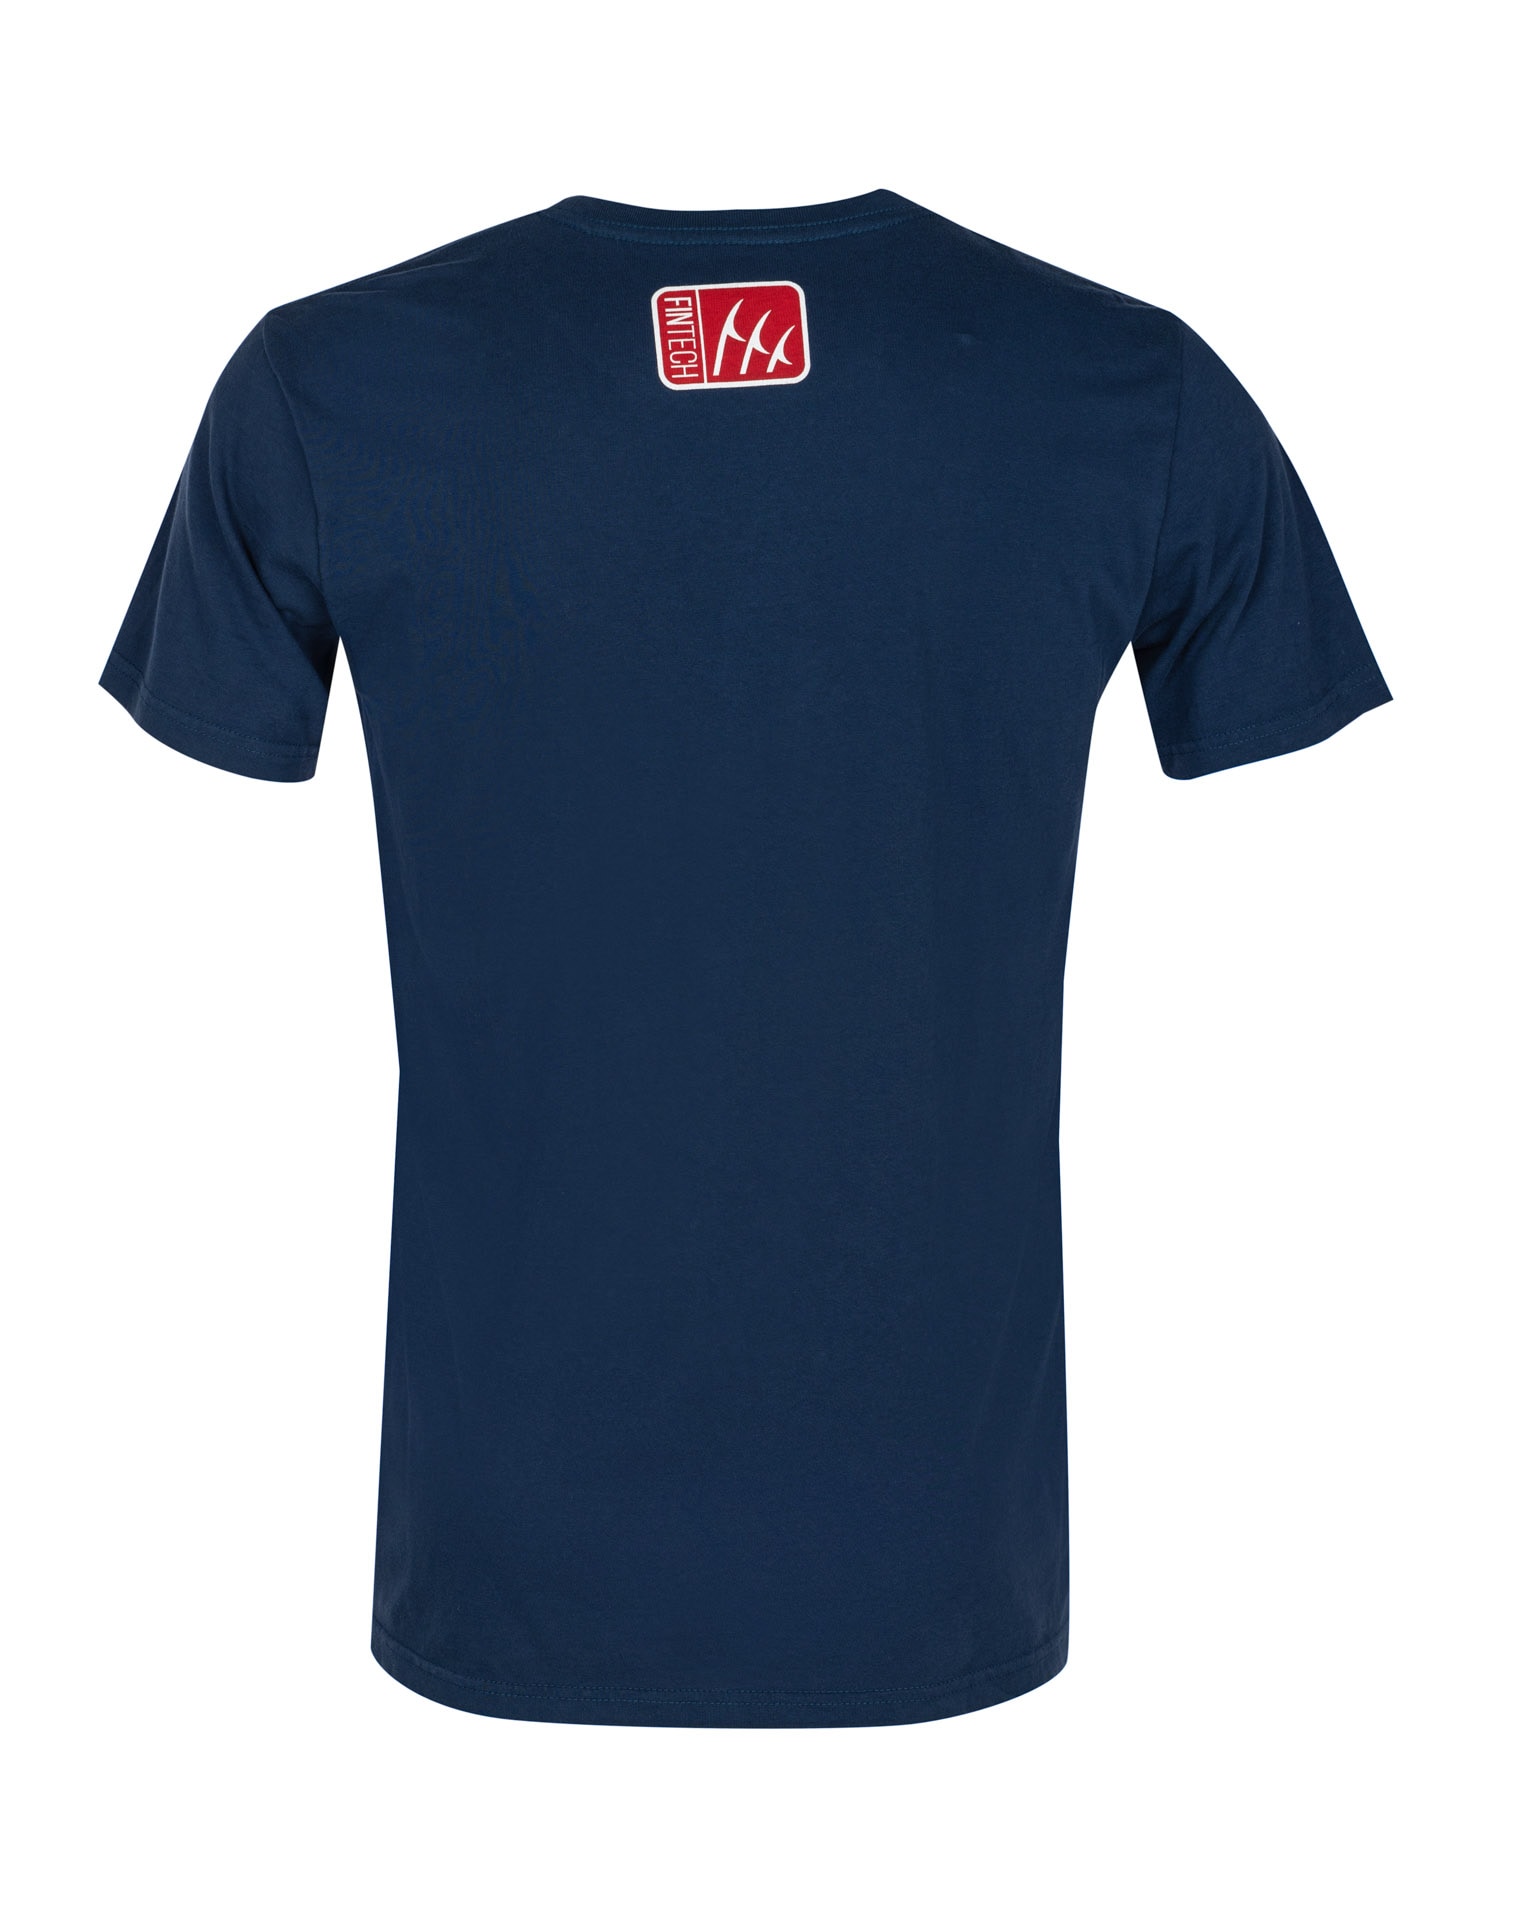 FINTECH Men's Short Sleeve Graphic T-shirt (Medium) in the Tops